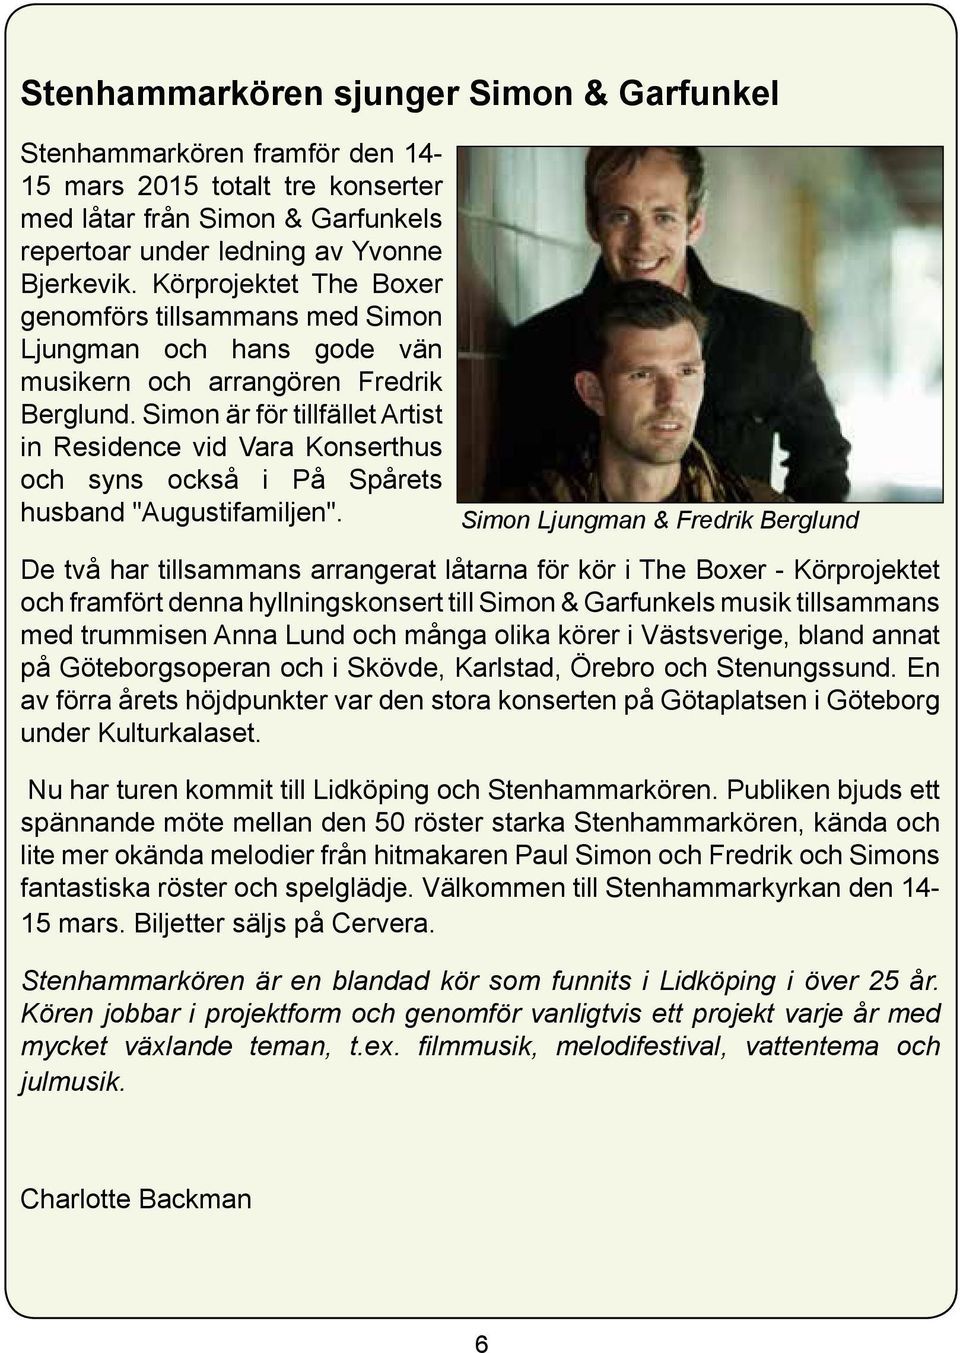 Simon är för tillfället Artist in Residence vid Vara Konserthus och syns också i På Spårets husband "Augustifamiljen".